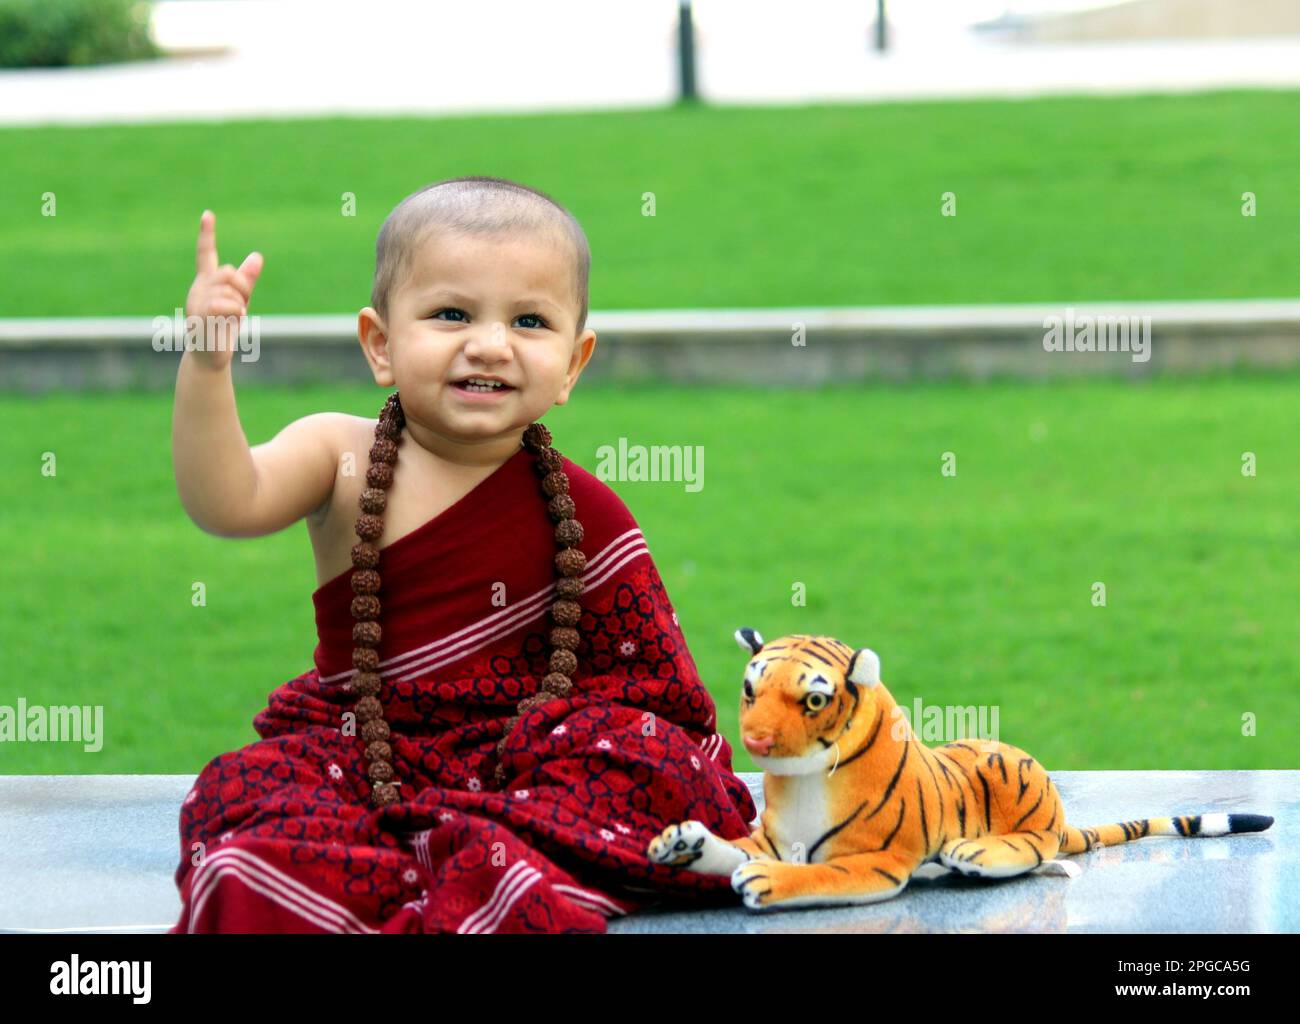 Ein süßer, kahlköpfiger Junge trägt Monk Avatar, einen kastanienbraunen Schal, Rudraksh, und ein süßes Lächeln. Ein Tiger-Spielzeug ist neben dem Jungen. Stockfoto